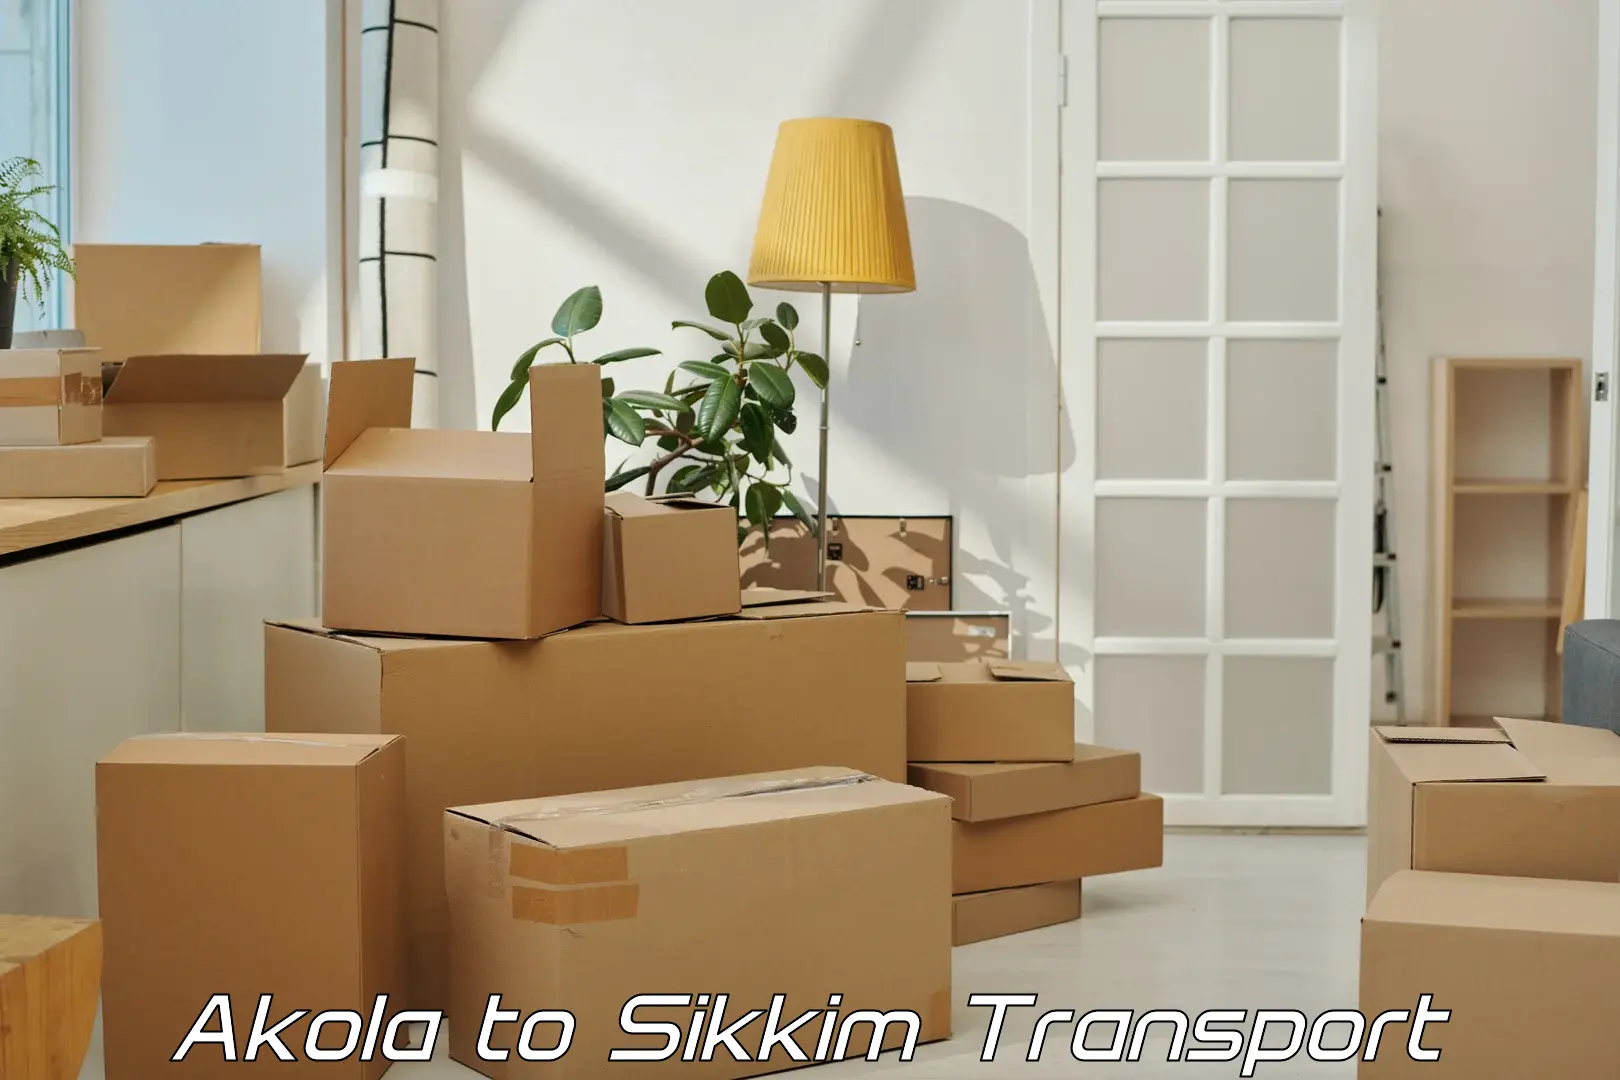 Delivery service Akola to Gangtok